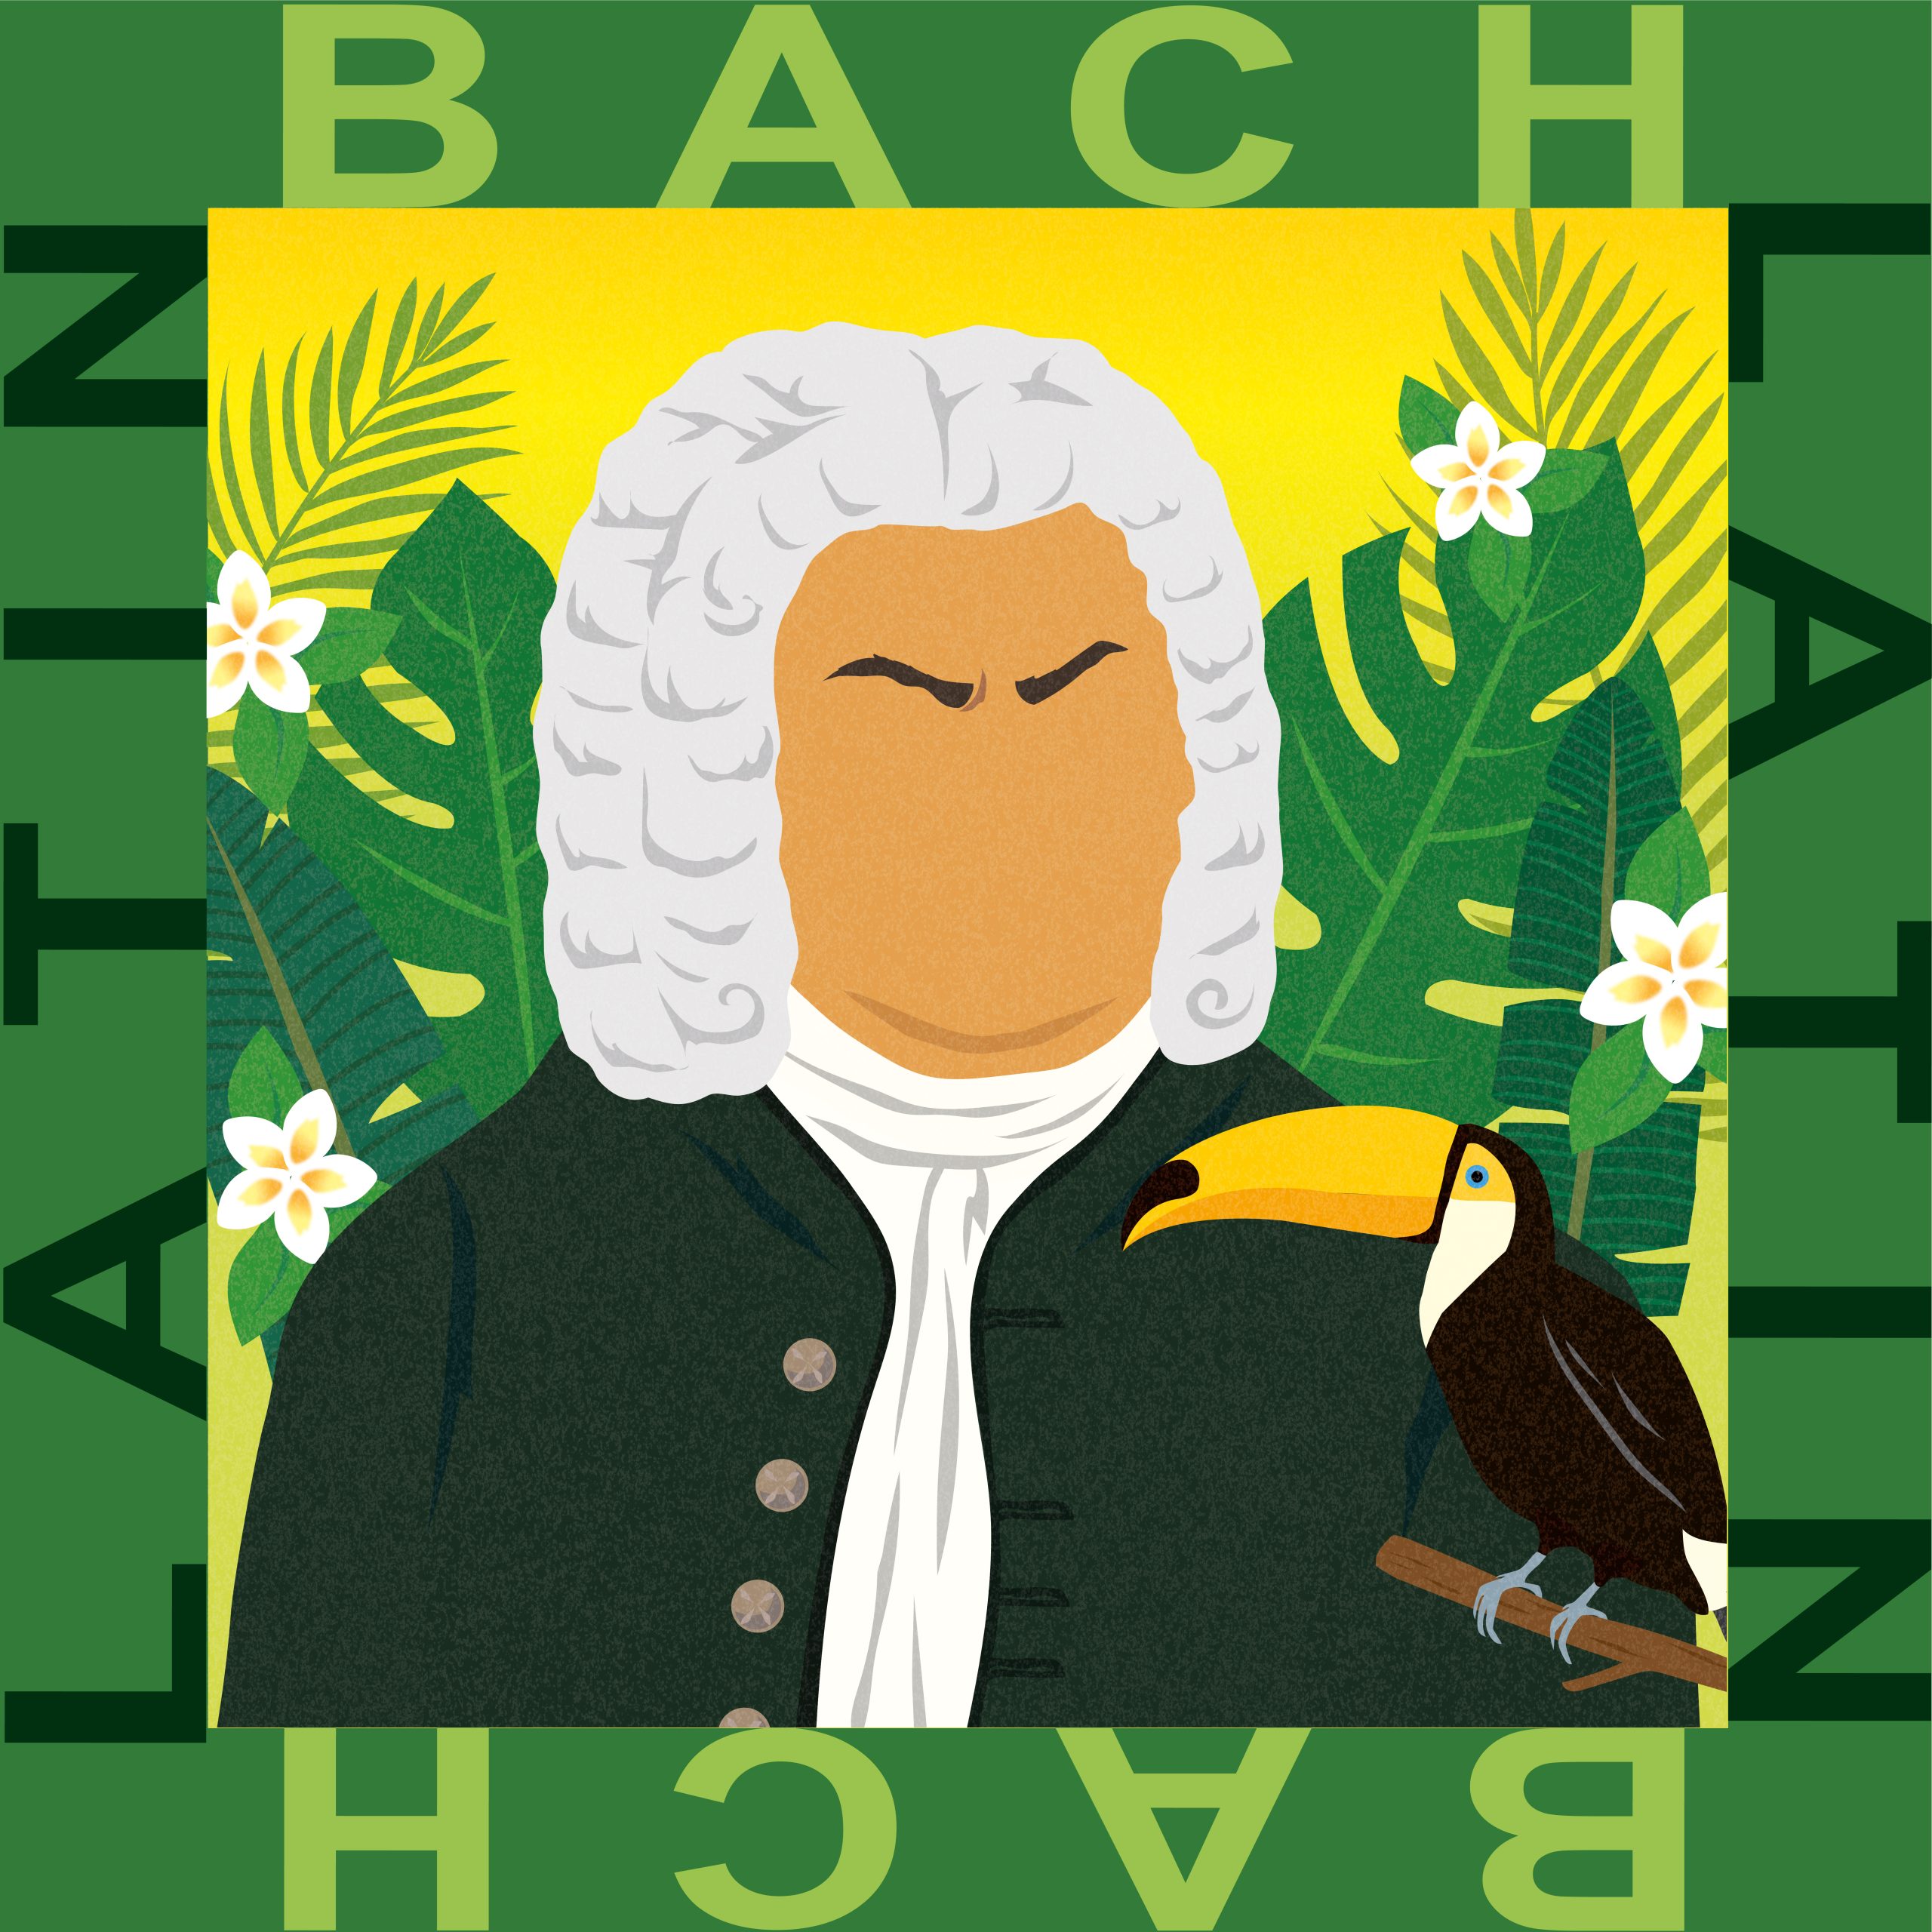 Latin Bach